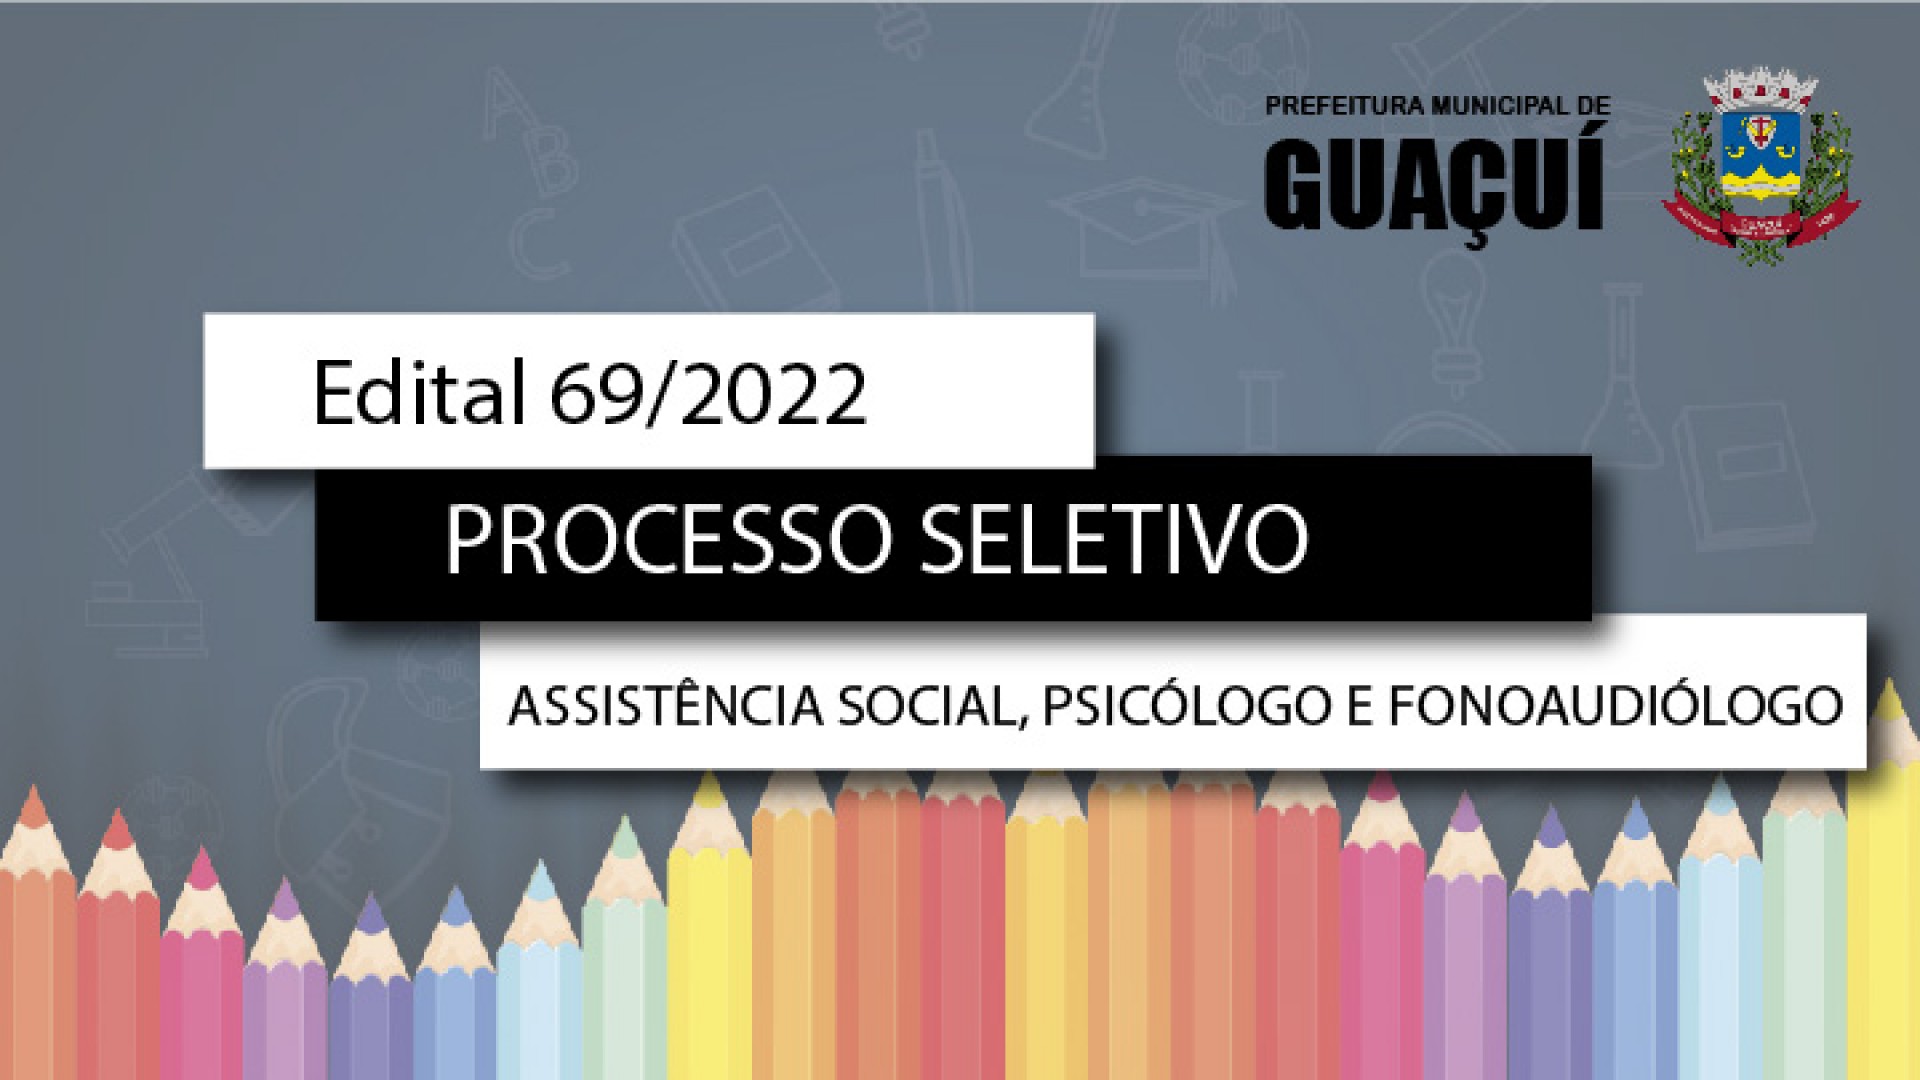 EDITAL EDUCAÇÃO Nº 069/2022 - ASSISTENTE SOCIAL, PSICÓLOGO E FONOAUDIÓLOGO